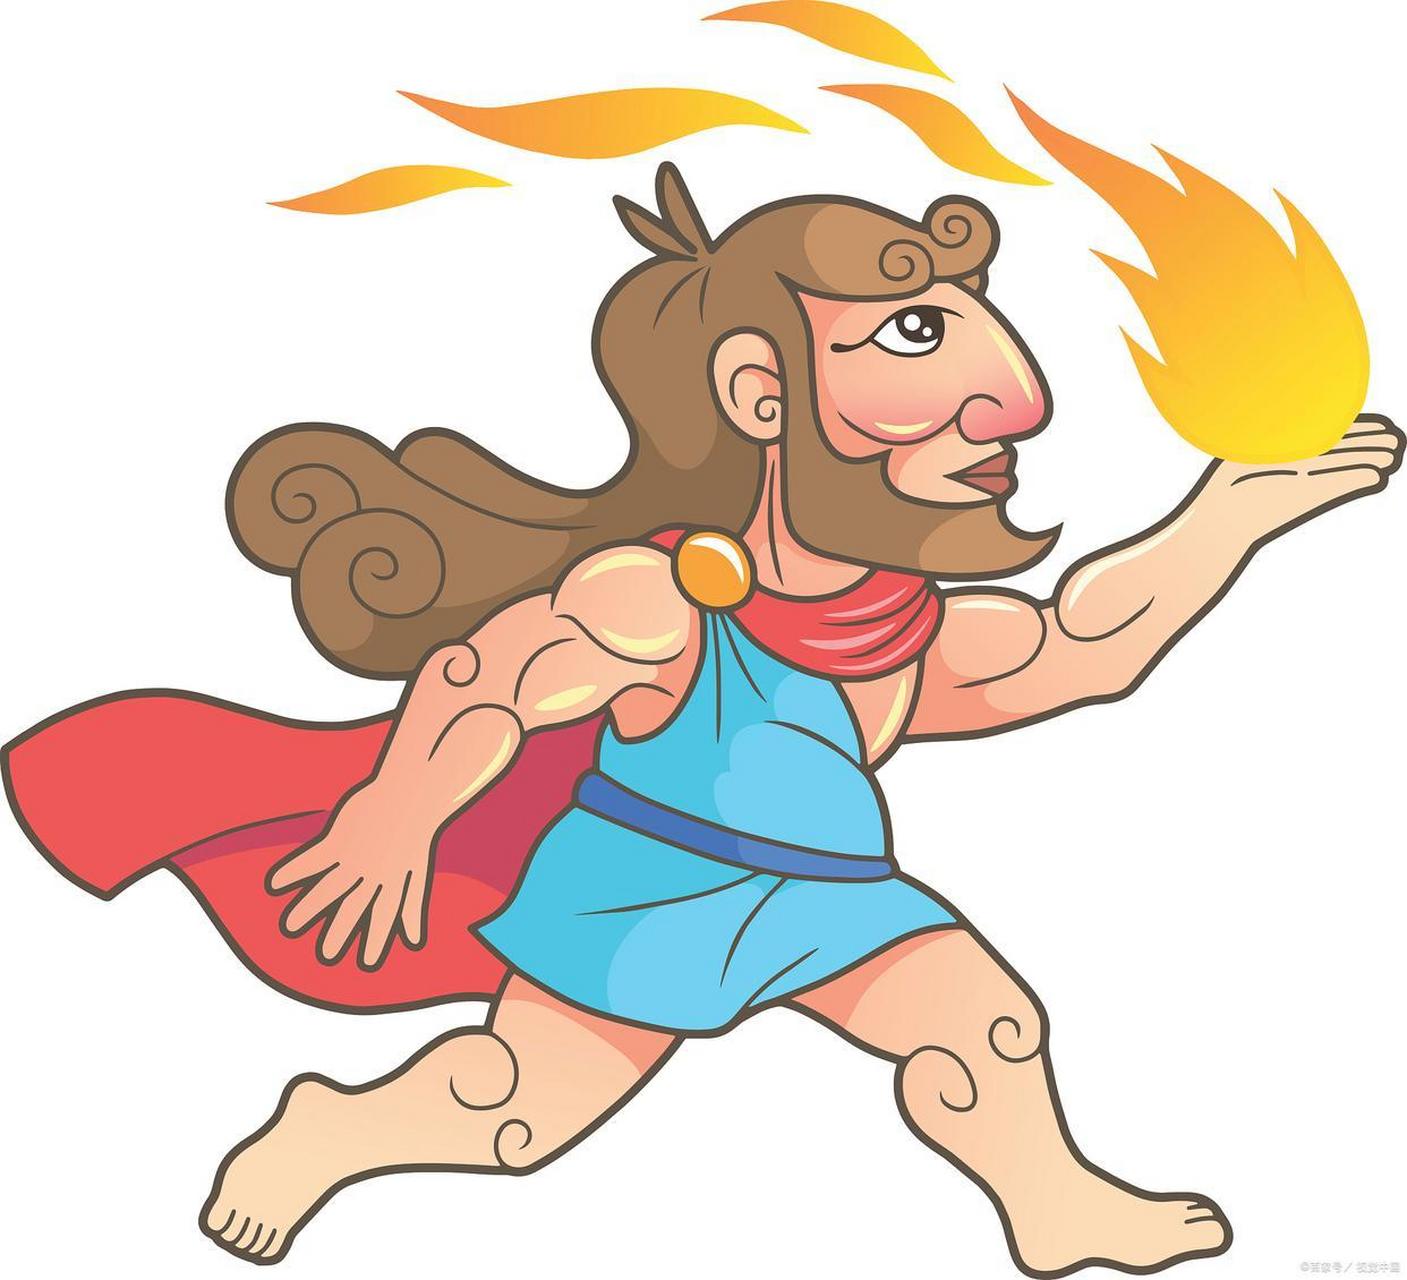 讲一个希腊神话中的普罗米修斯(prometheus)偷走火种的故事.